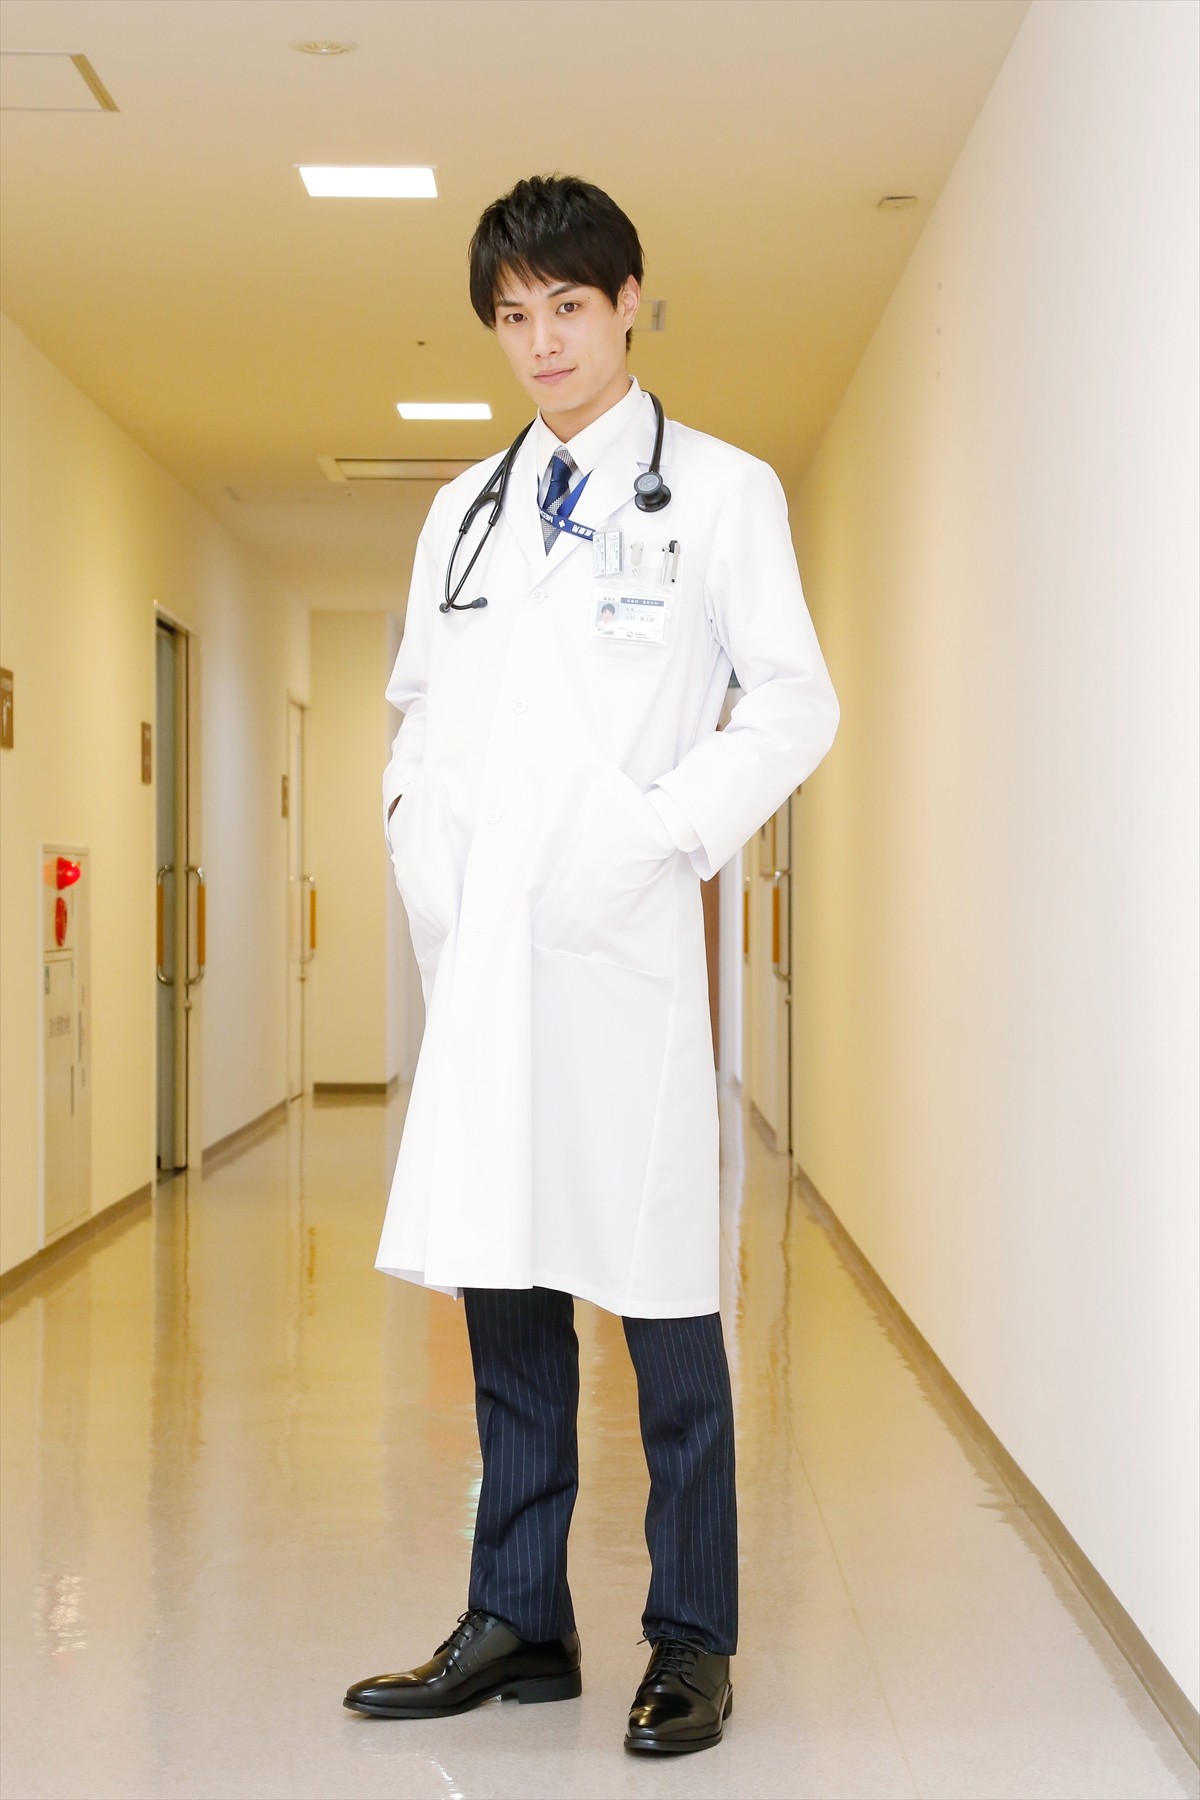 鈴木伸之、初の“月9”で医者役初挑戦 『ラジエーションハウス』出演決定